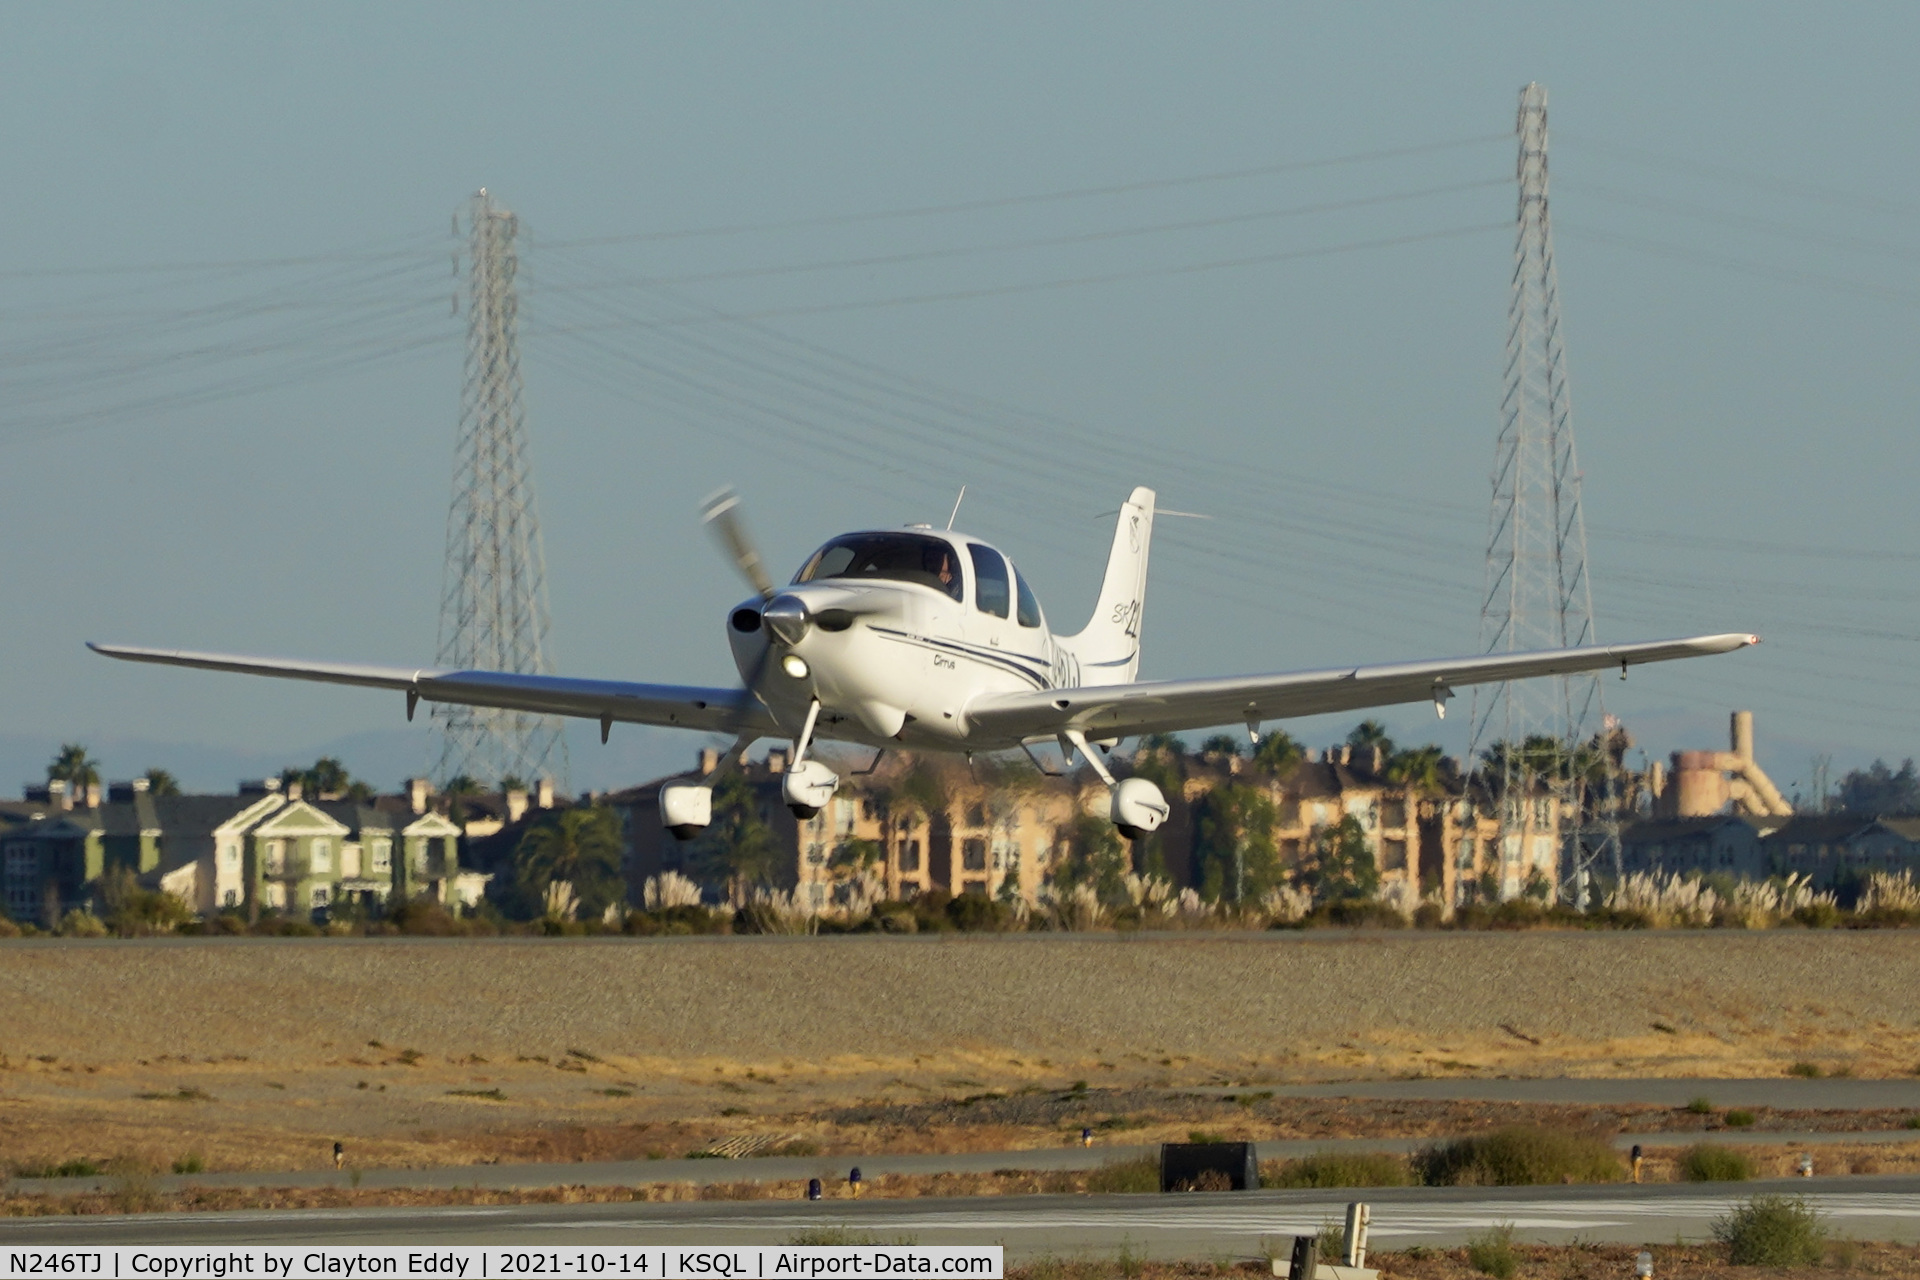 N246TJ, 2002 Cirrus SR22 C/N 0382, San Carlos airport California 2021.